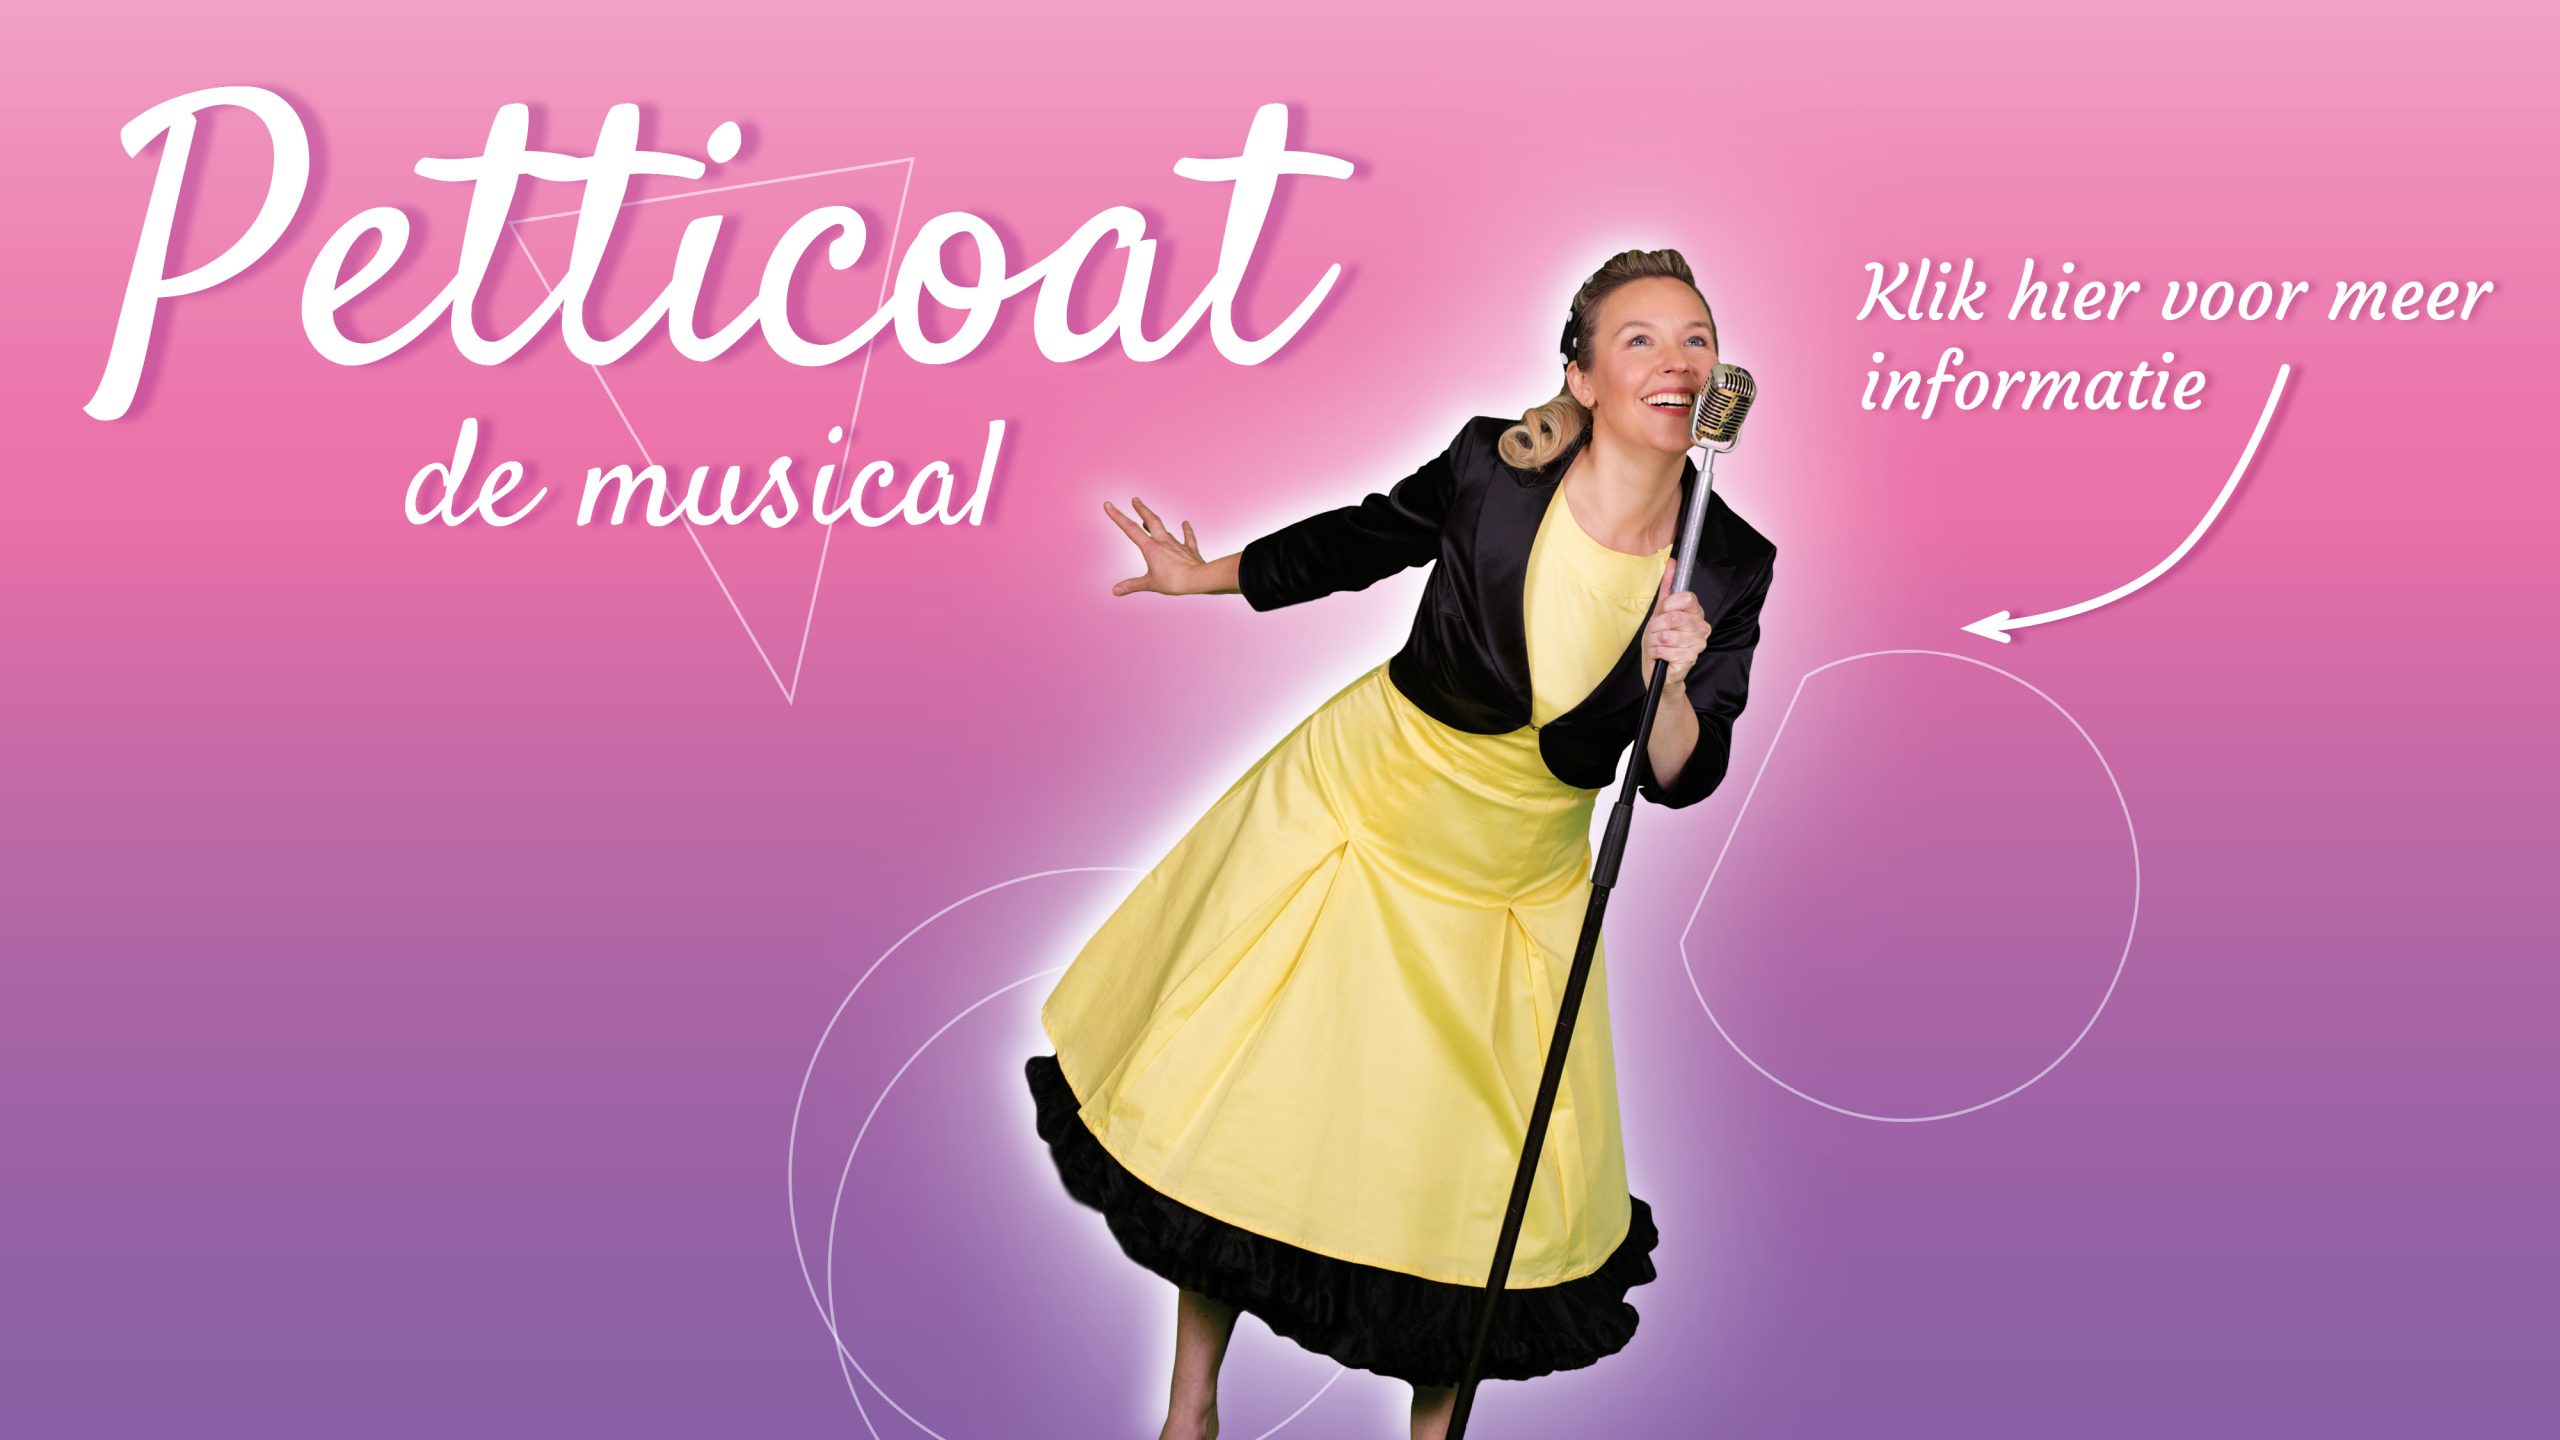 21 en 22 juni speelt OVA Petticoat - de Musical in de Grote zaal van de Shouwburg Amstelveen